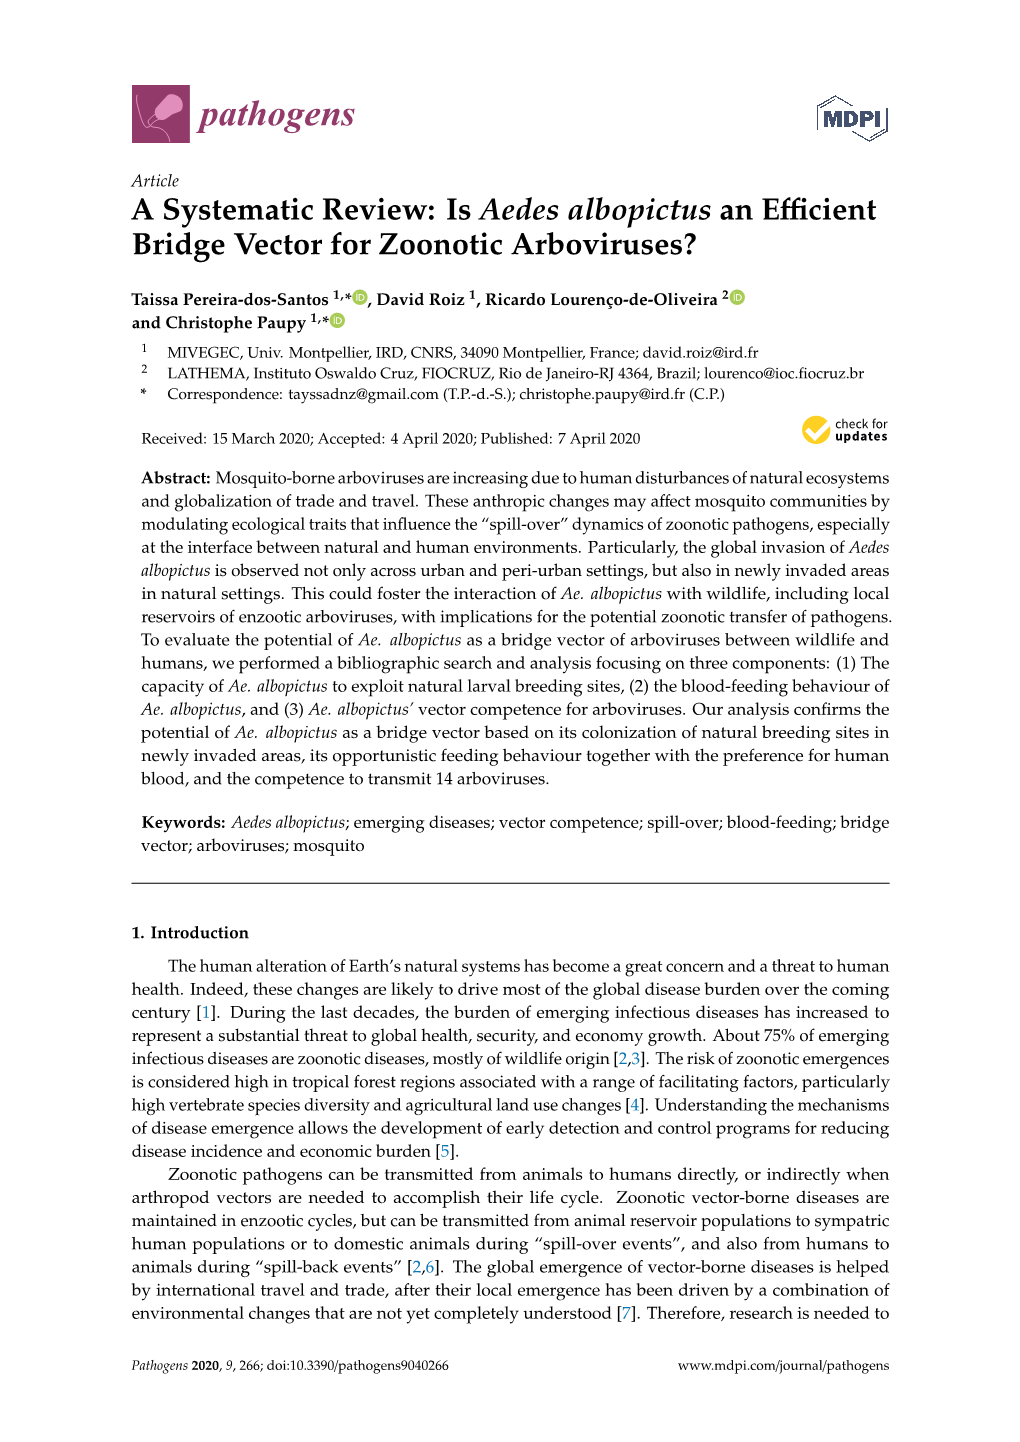 Is Aedes Albopictus an Efficient Bridge Vector for Zoonotic Arboviruses?